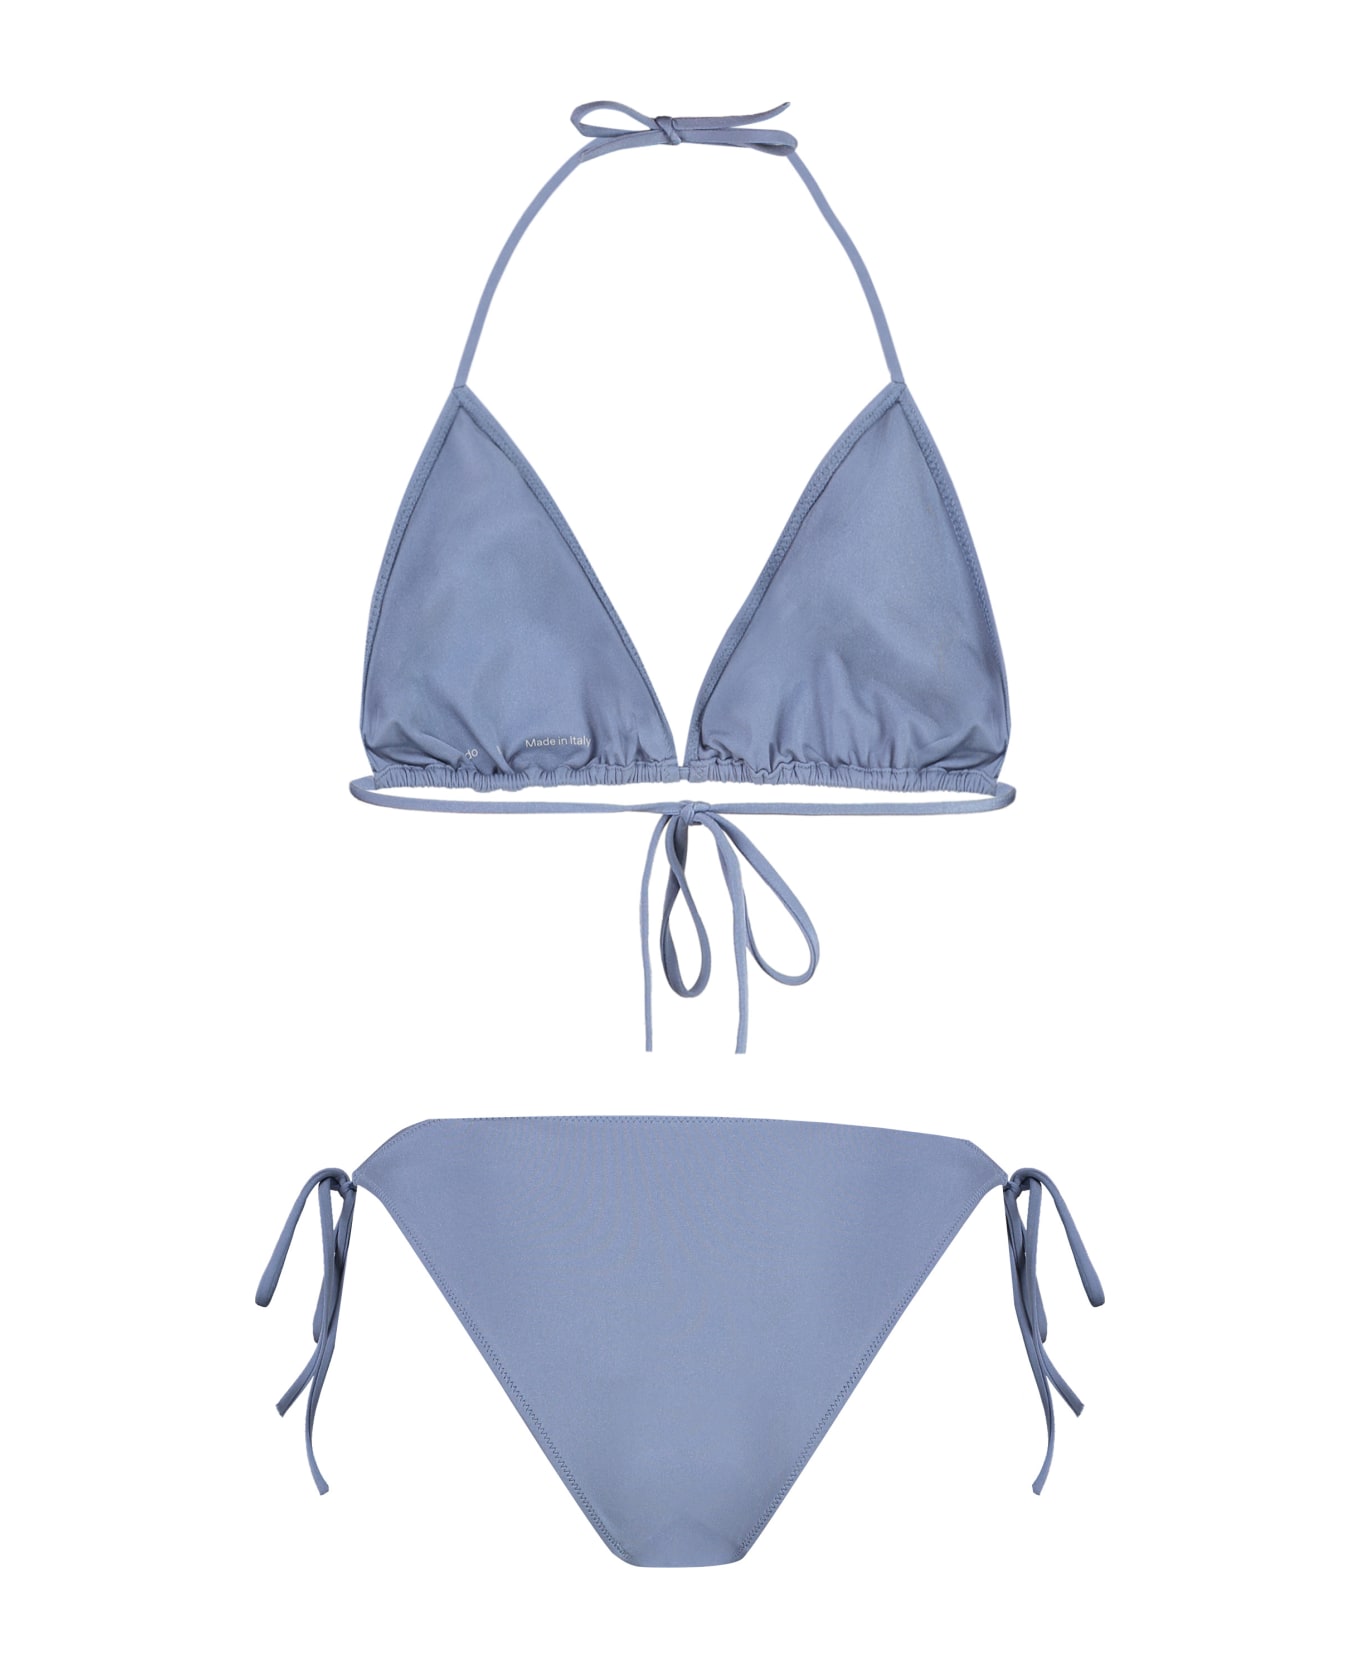 Lido Venti Triangle Bra Bikini - blue